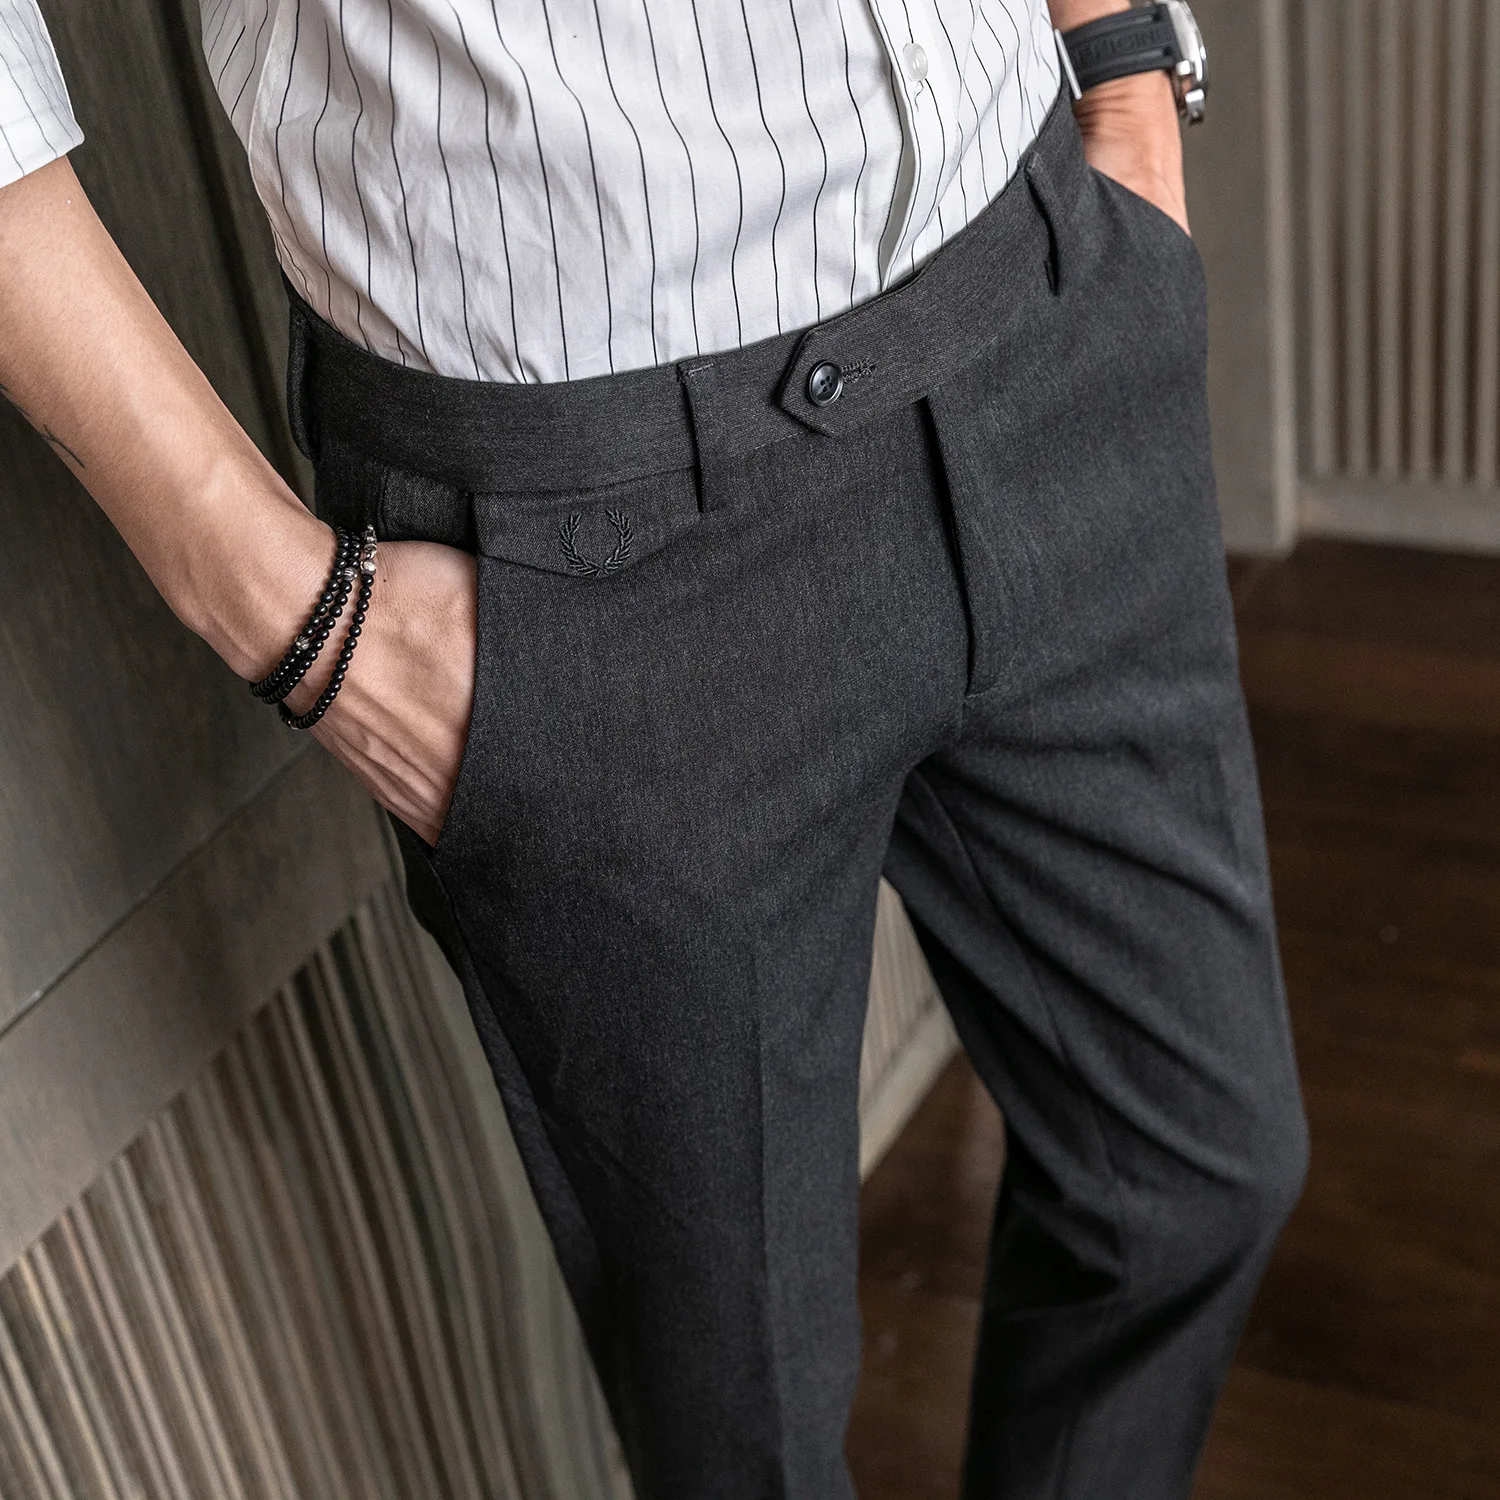 MRMT 2019 бренд осень-зима Для мужчин брюки Тонкий Повседневное однотонные Цвет младшего возраста штаны для мужчин небольшая эластичность